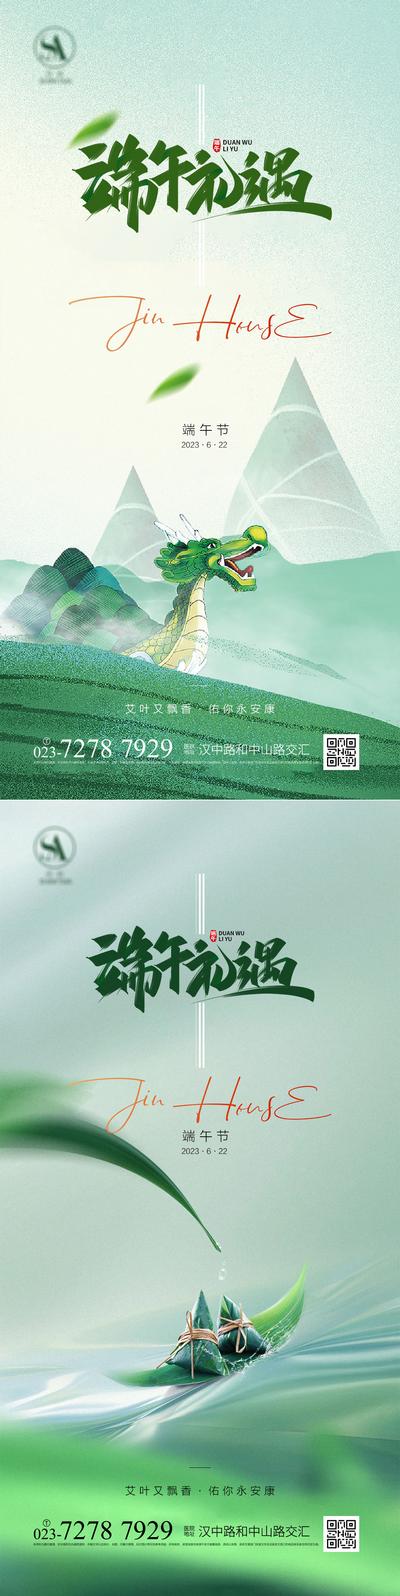 南门网 广告 海报 节日 端午 地产 龙舟 系列 品质